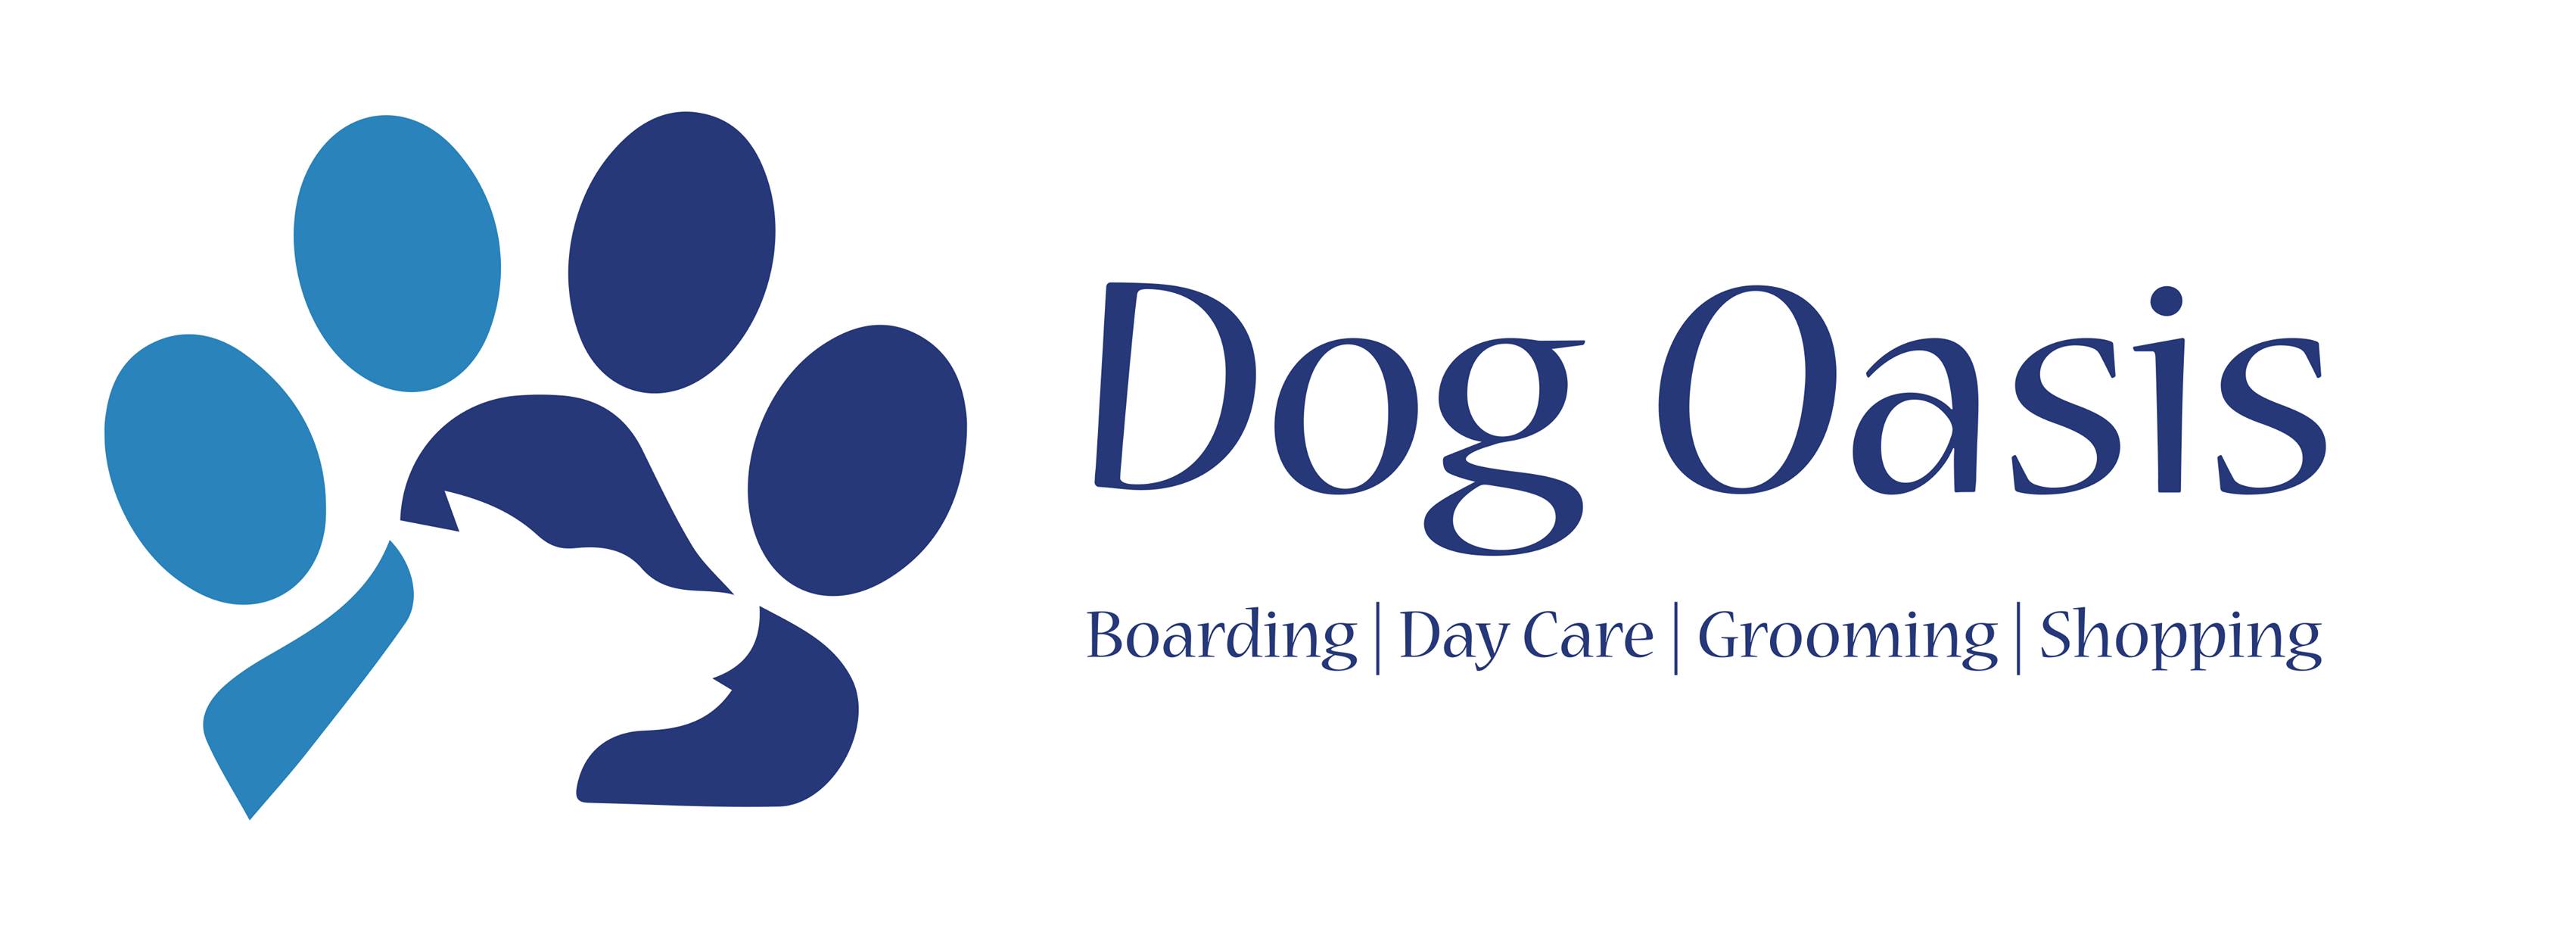 Company logo of Dog Oasis